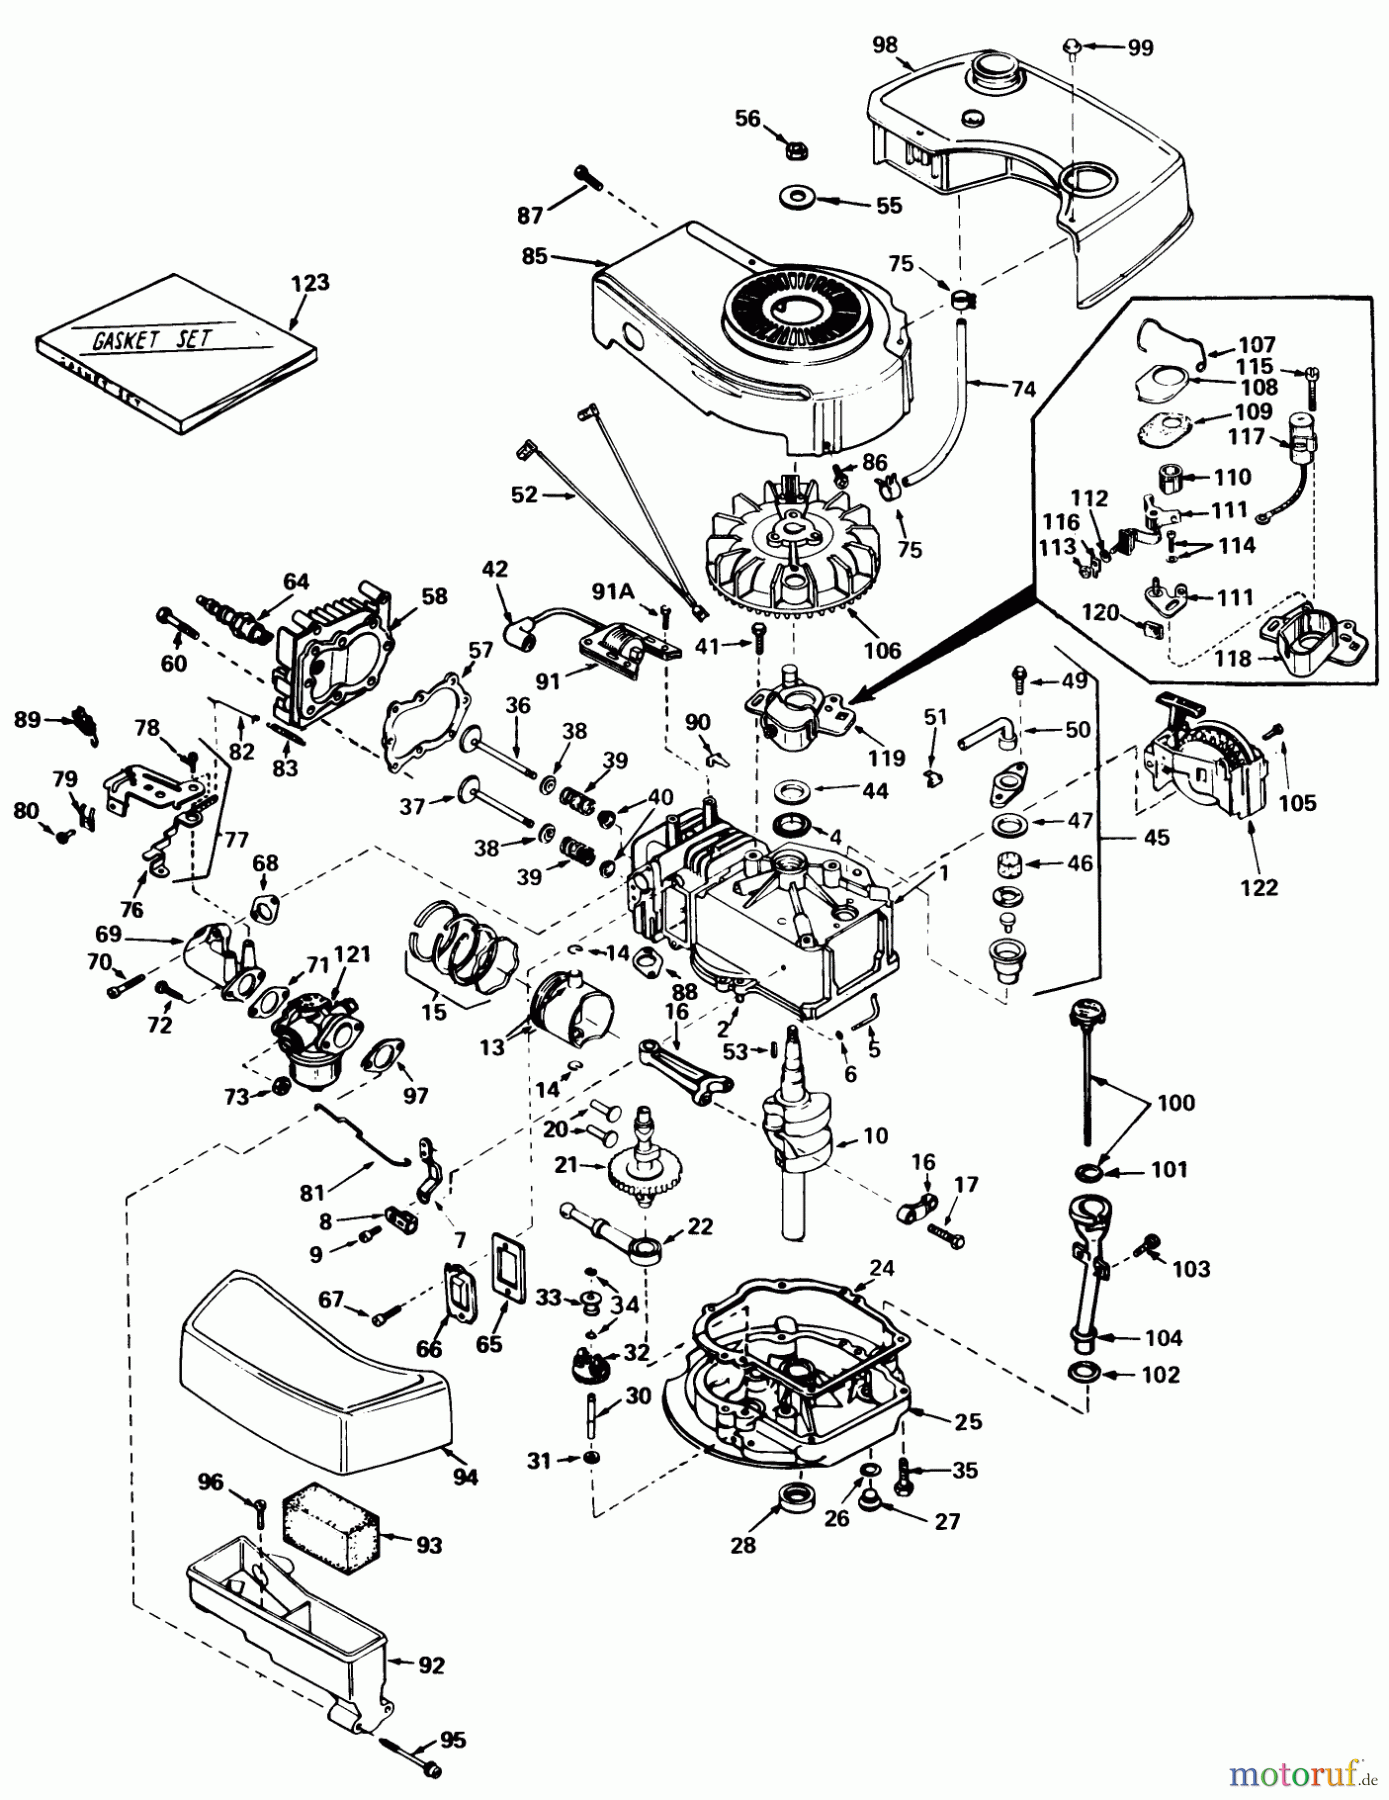  Toro Neu Mowers, Walk-Behind Seite 1 20788 - Toro Lawnmower, 1979 (9000001-9999999) ENGINE TECUMSEH MODEL NO. TNT 100-10059C